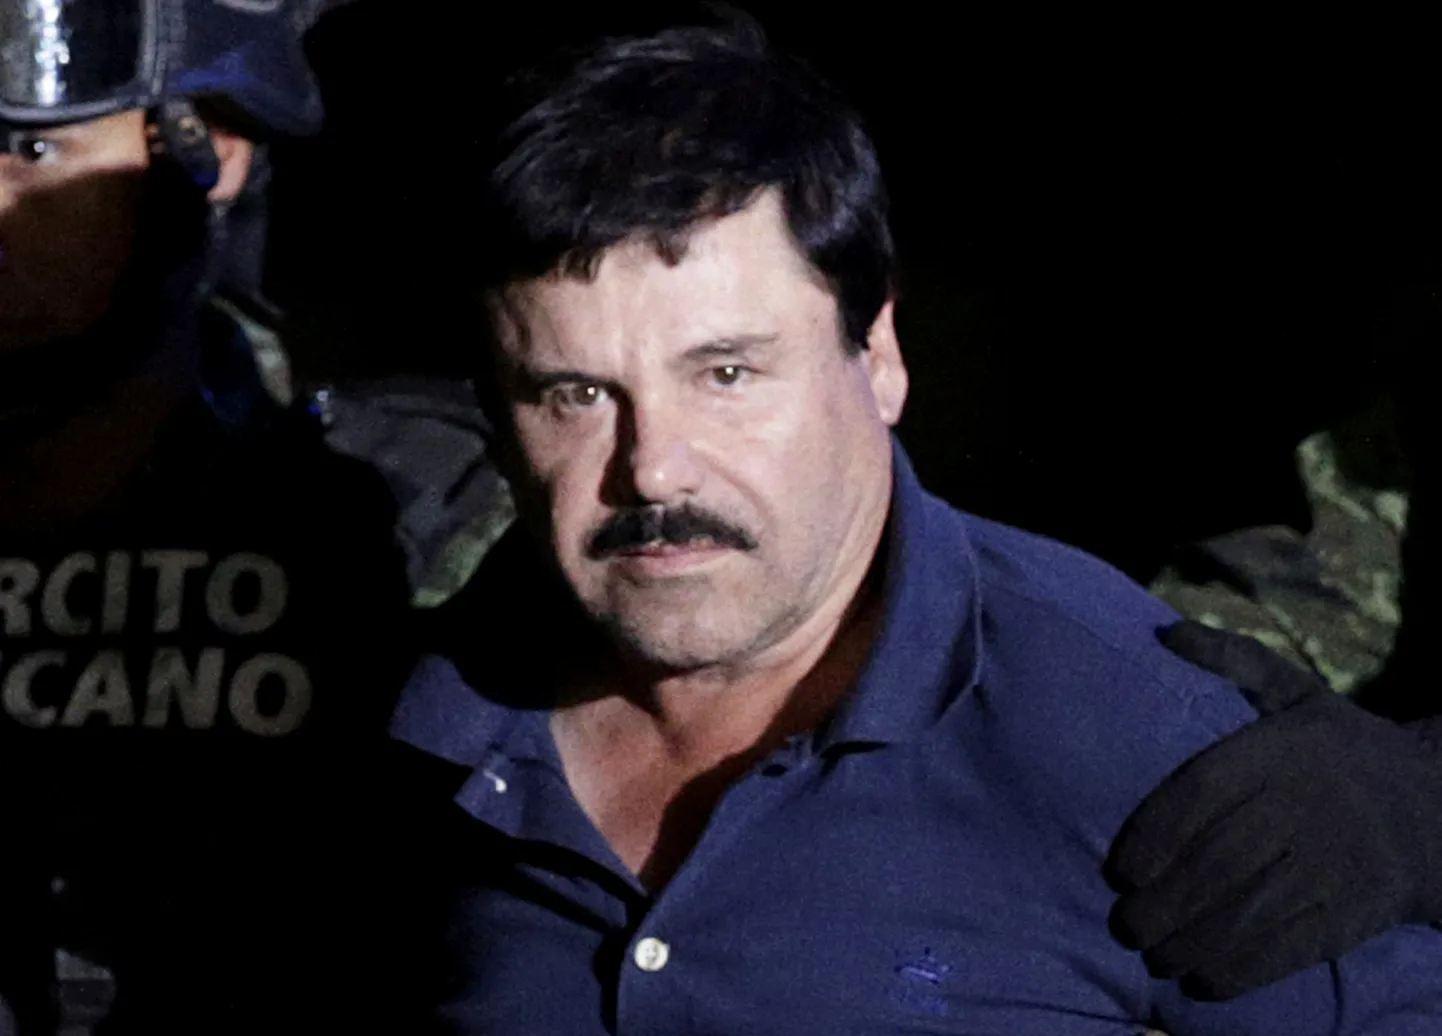 El Chapo veedab ülejäänud elu trellide taga.